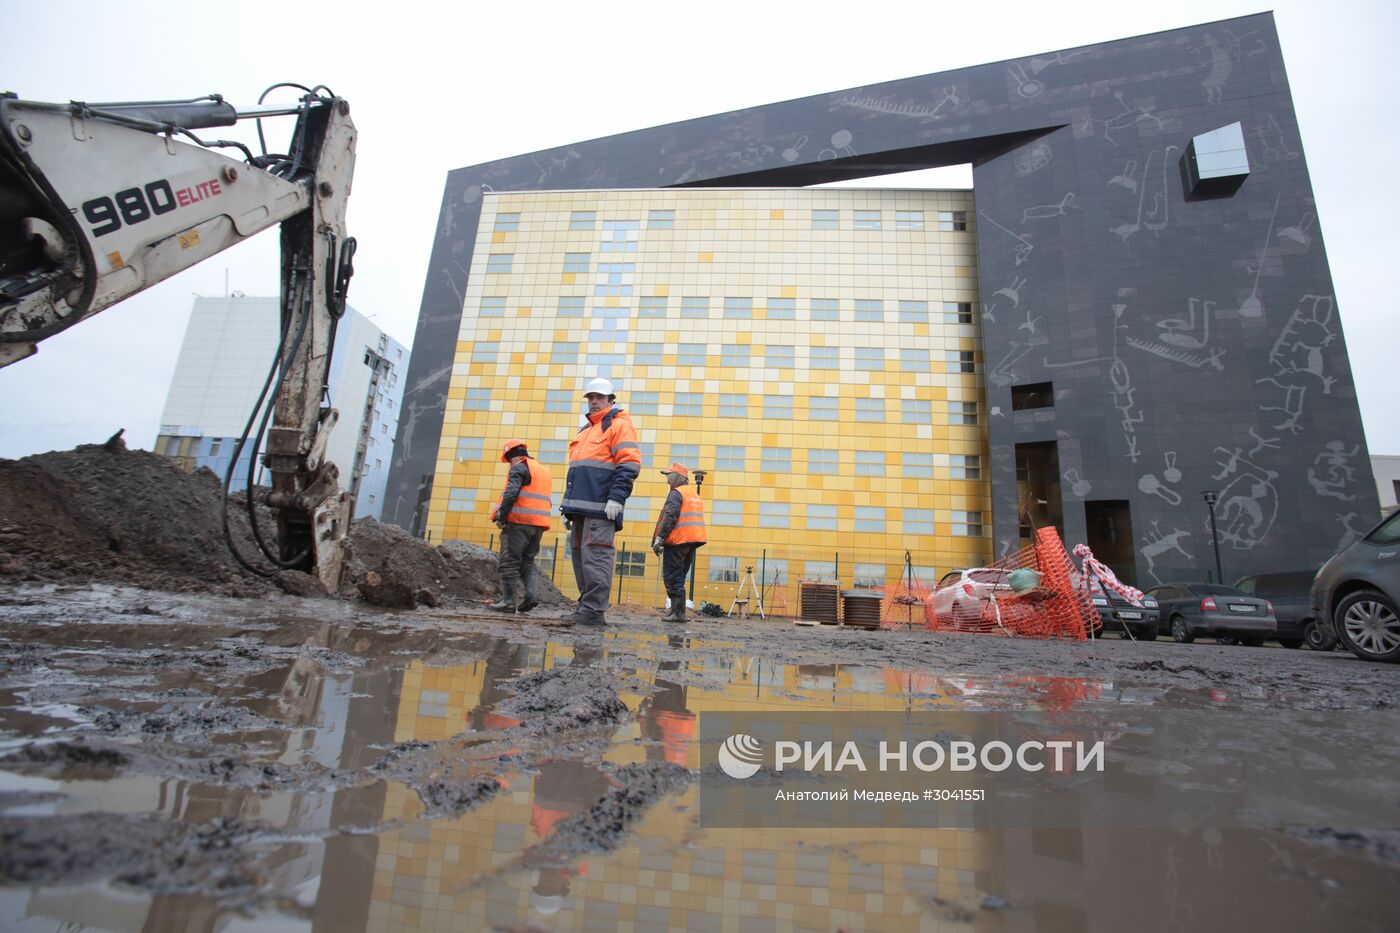 Строительство комплекса зданий РХЦ “Старая деревня” в Санкт-Петербурге